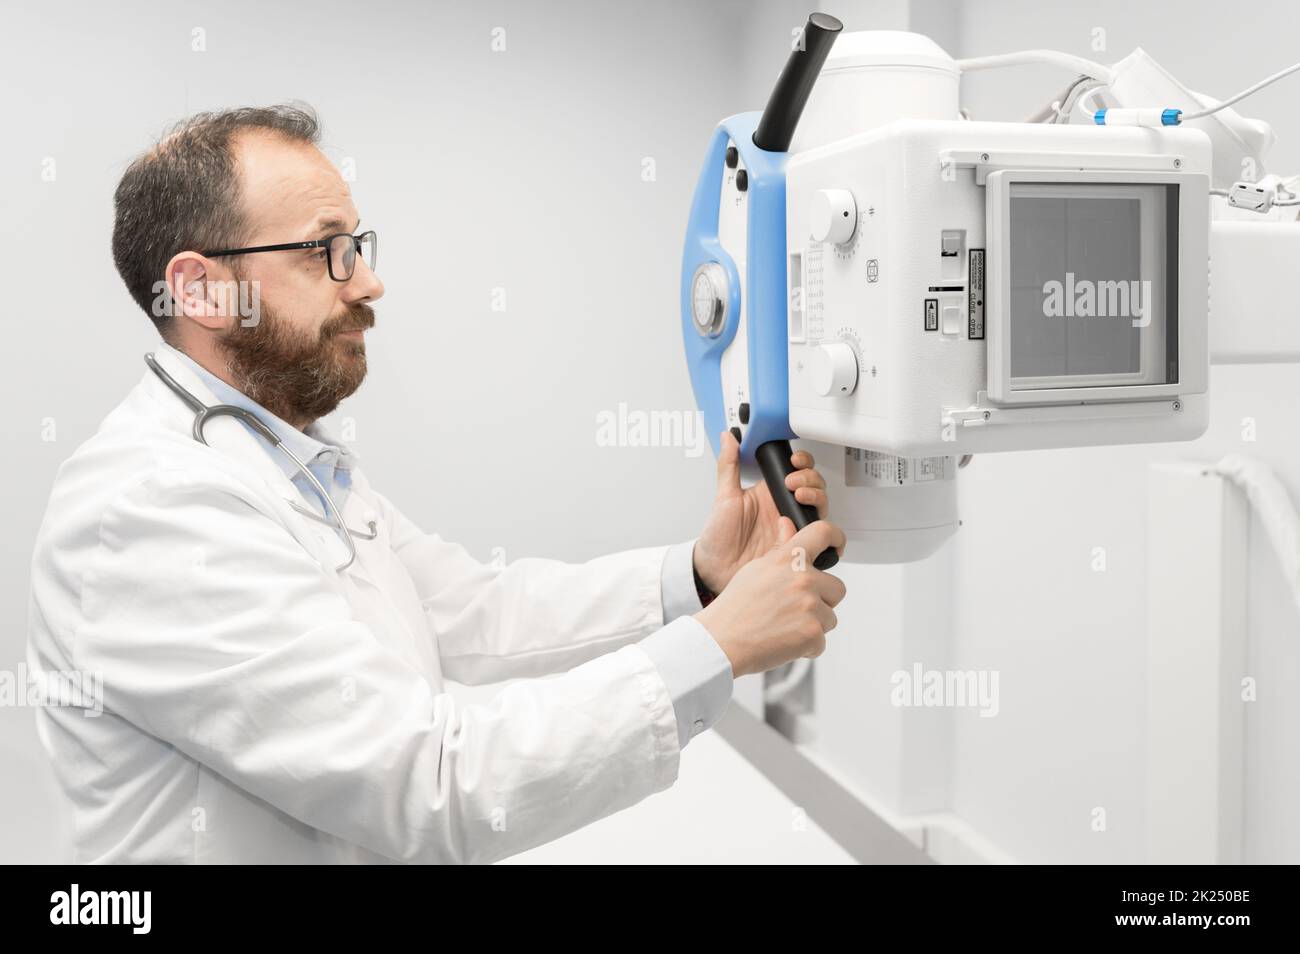 Arzt, der das Röntgengerät in der Radiologieabteilung betreibt. Hochwertige Fotografie. Stockfoto